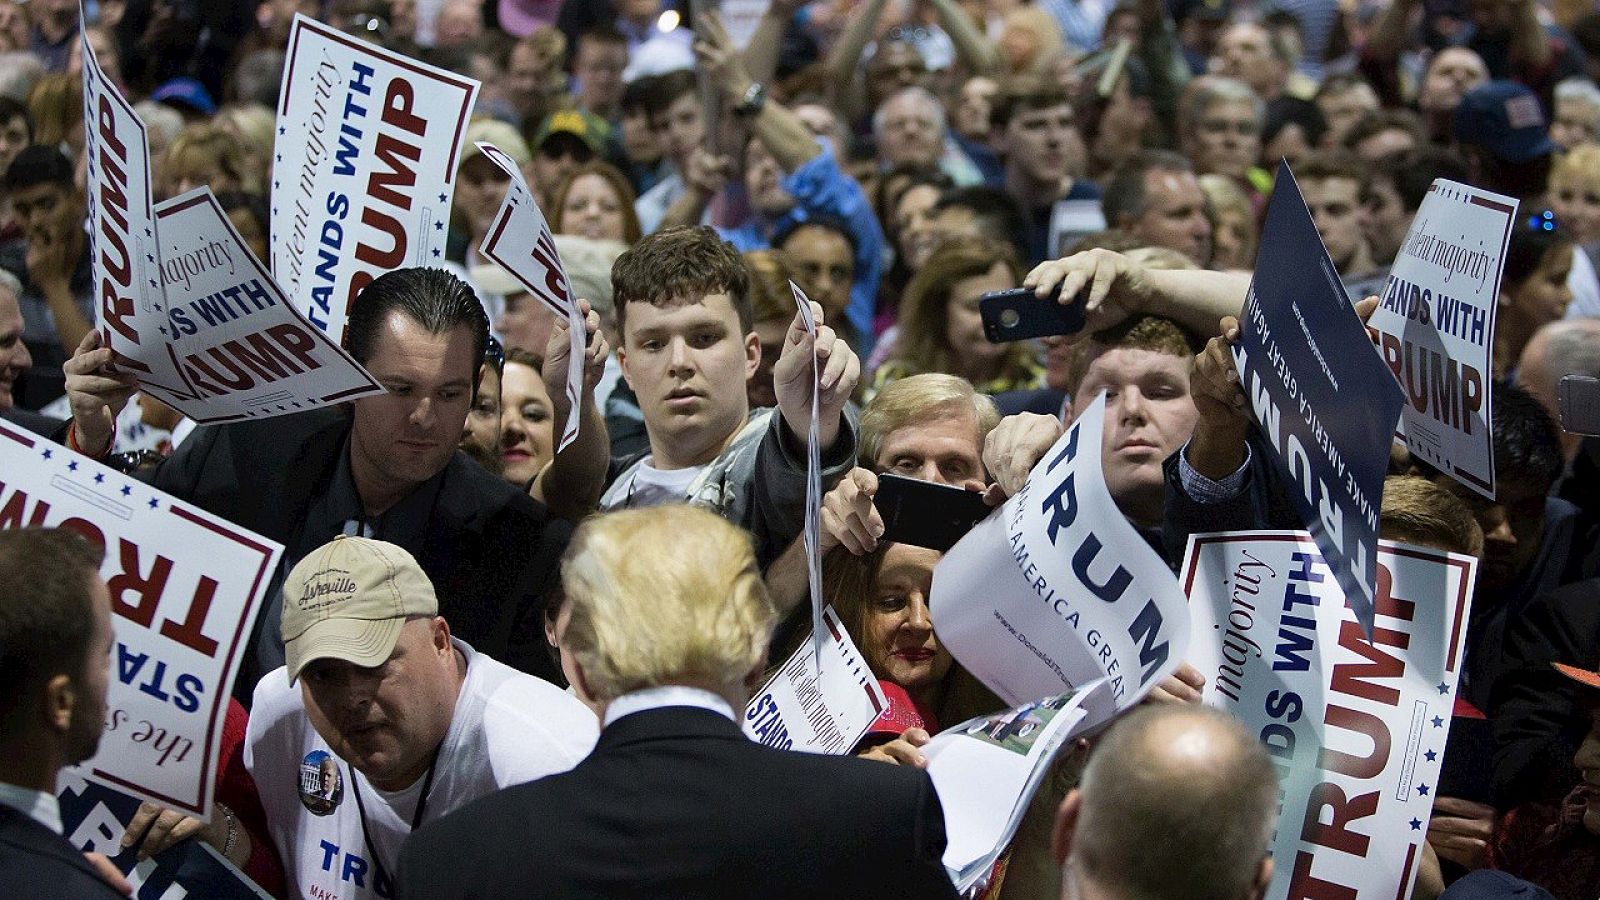 El candidato republicano a las primarias presidenciales, Donald Trump, en un acto en Atlanta, Georgia, el 21 de febrero de 2016. Branden Camp/Getty Images/AFP